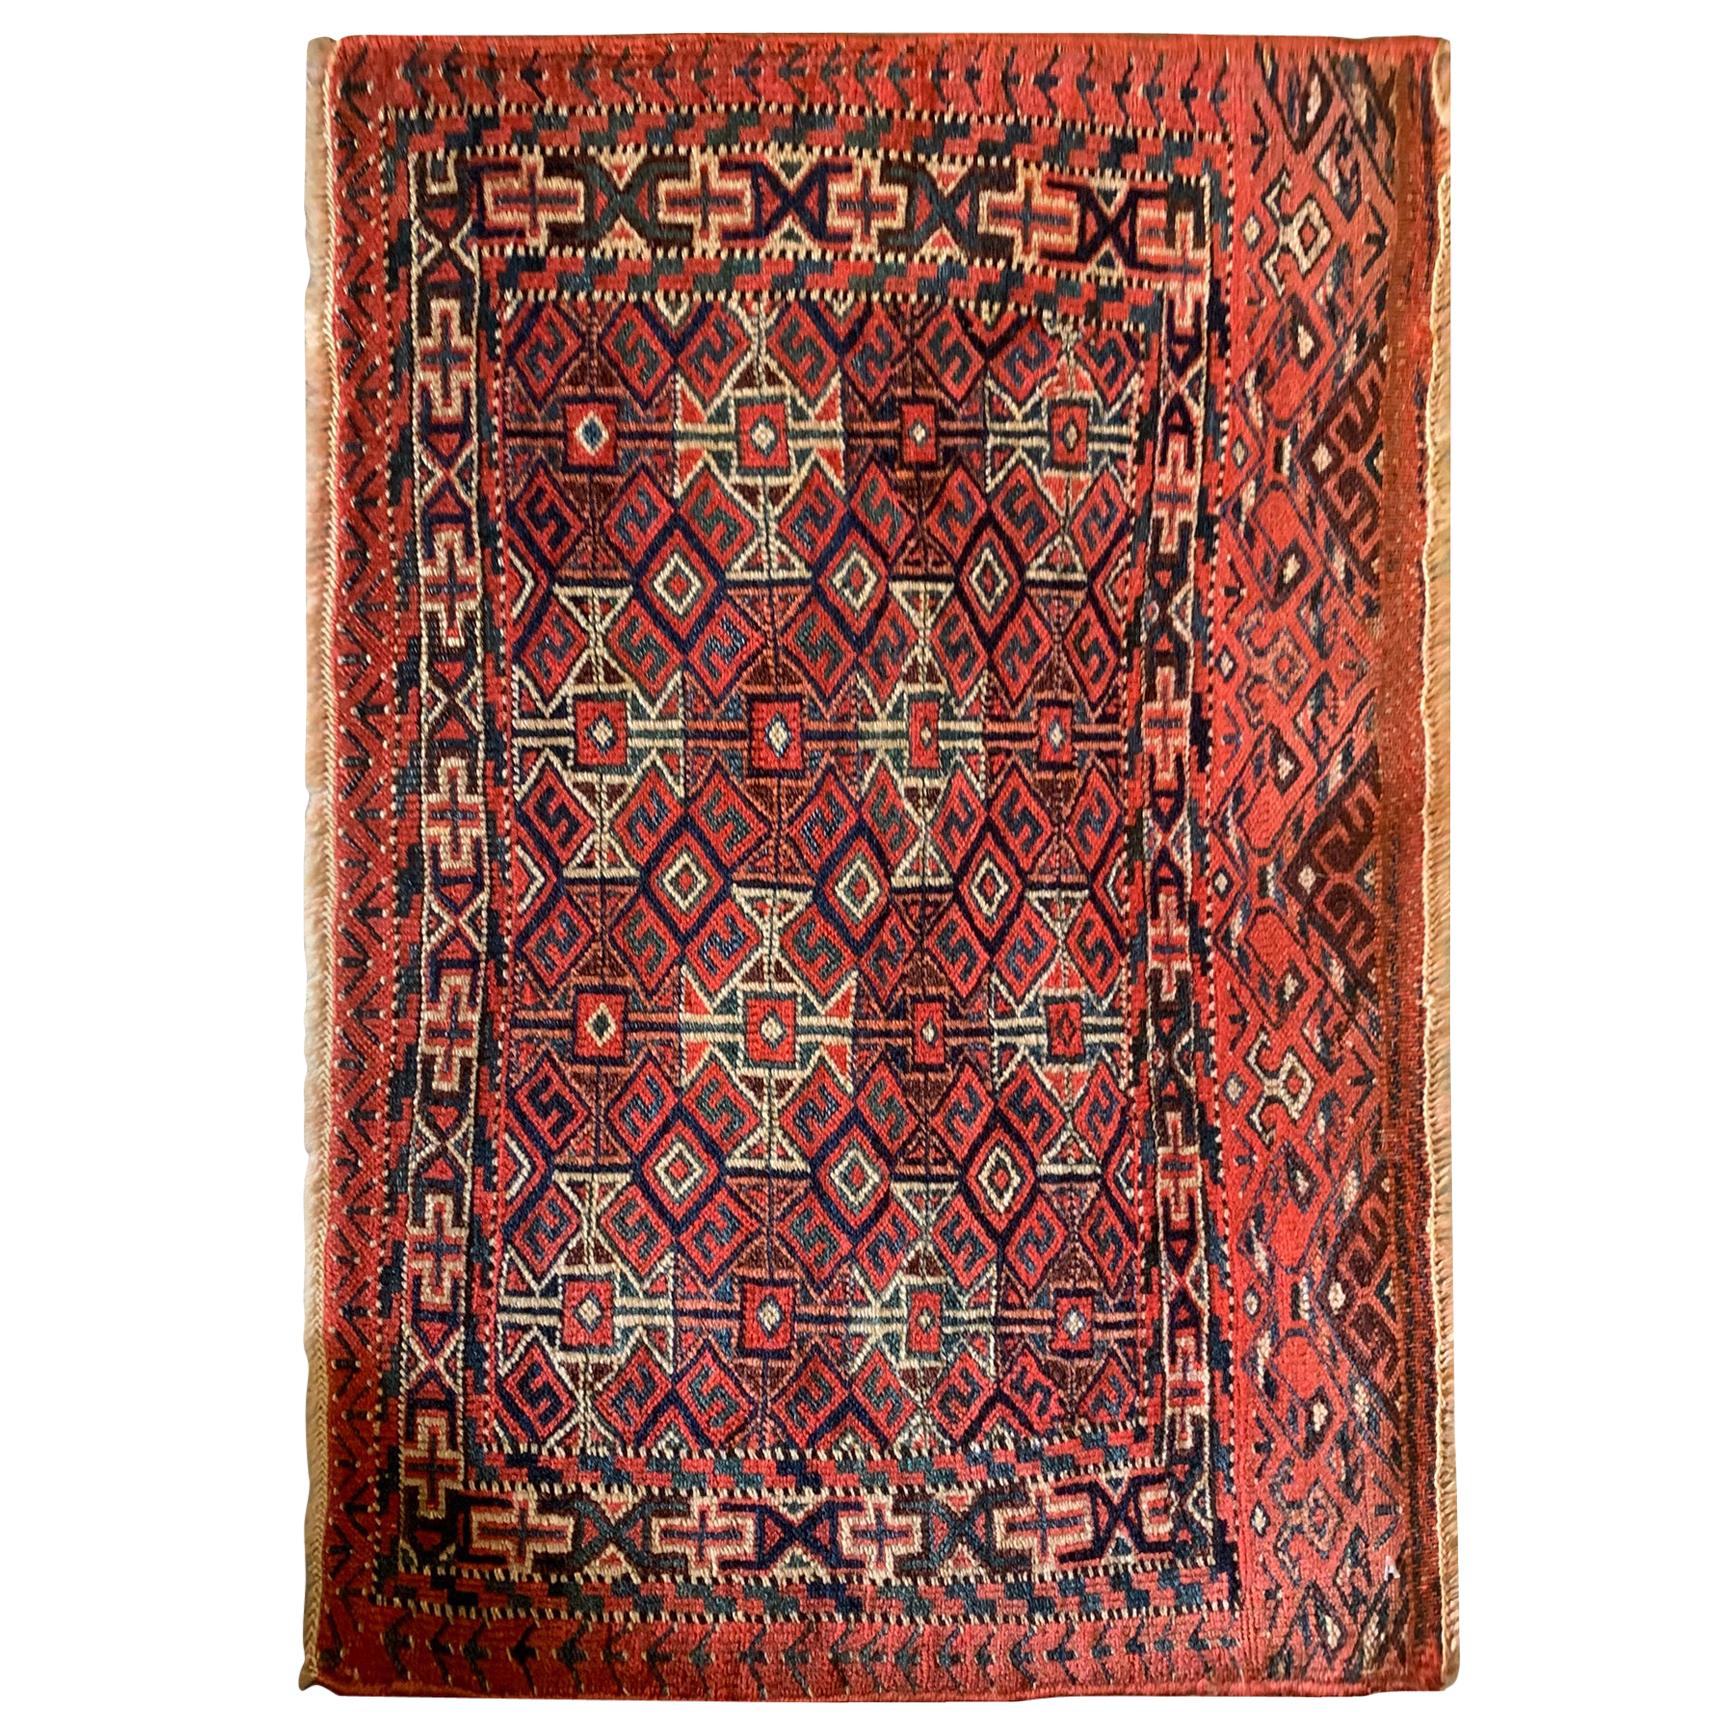 Roter orientalischer antiker Teppich, turkmenischer Teppich Geometrischer Wollteppich